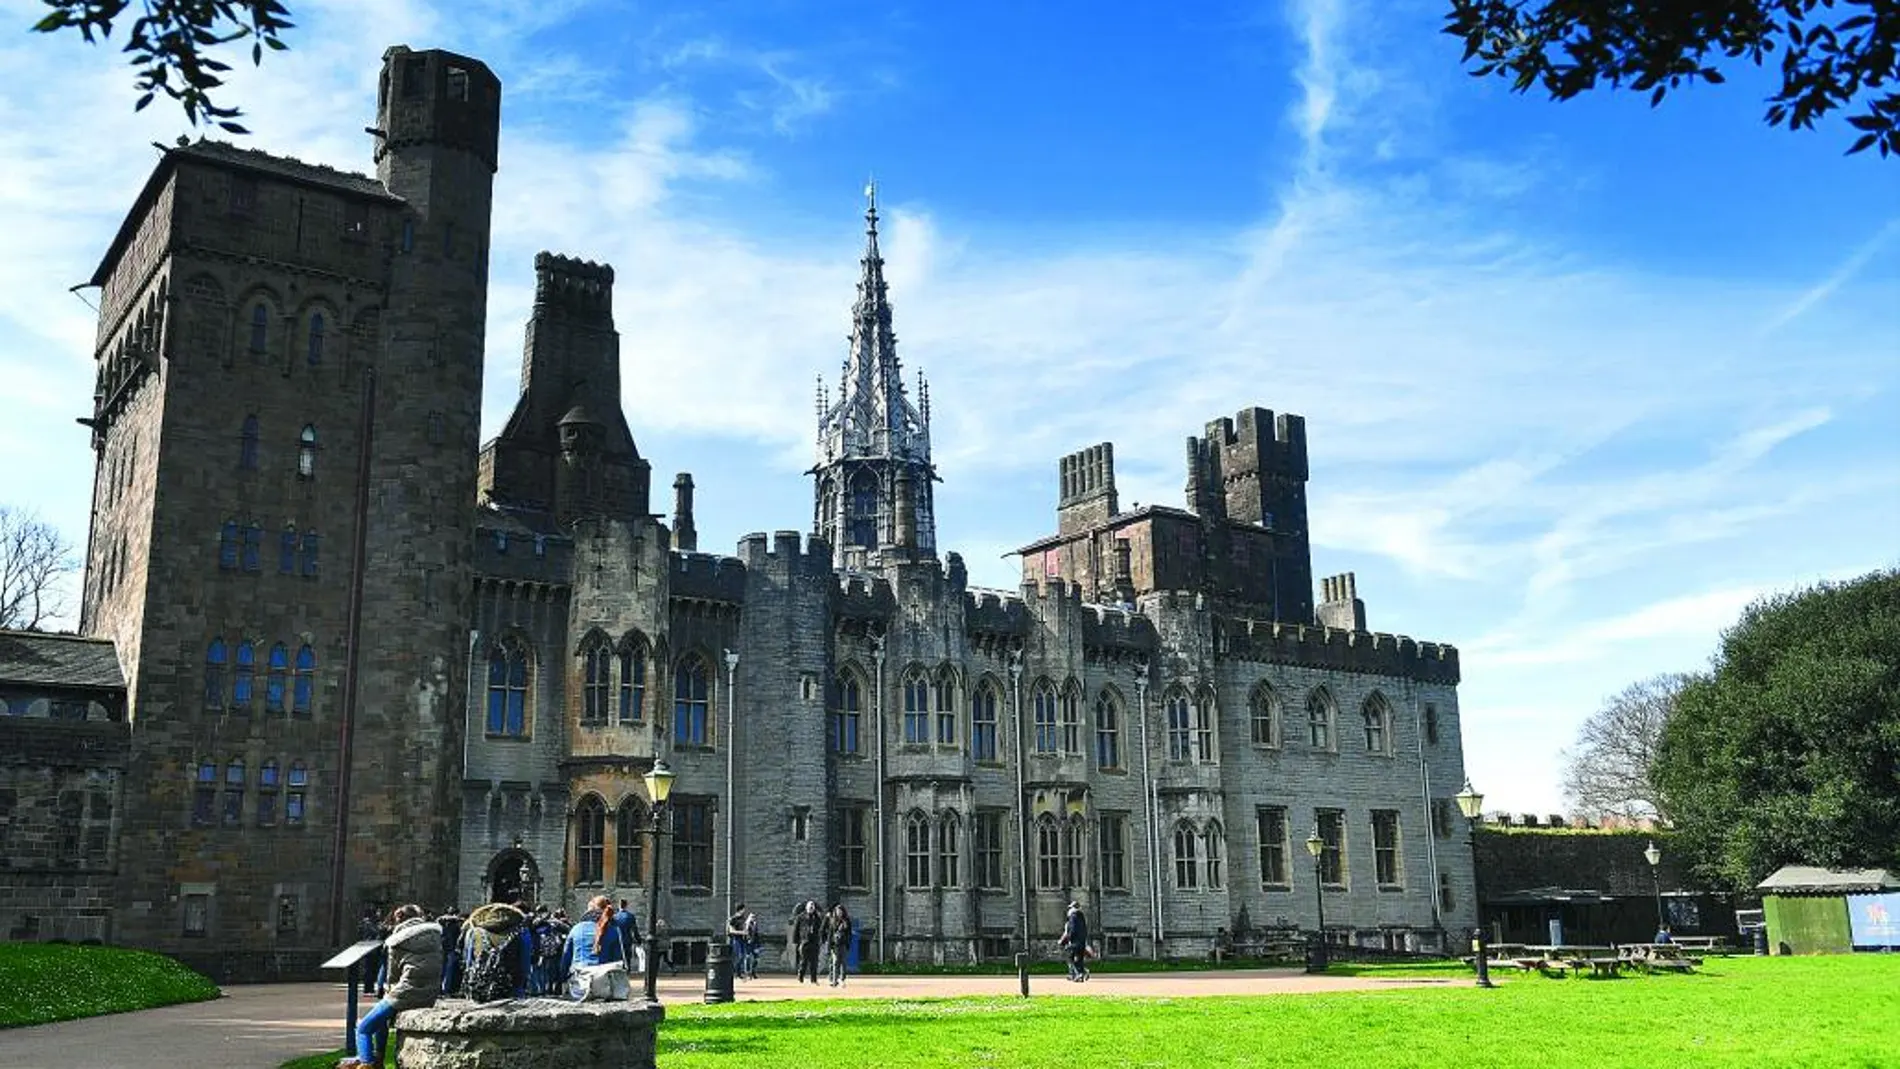 El castillo de Cardiff impresiona por su imponente estructura